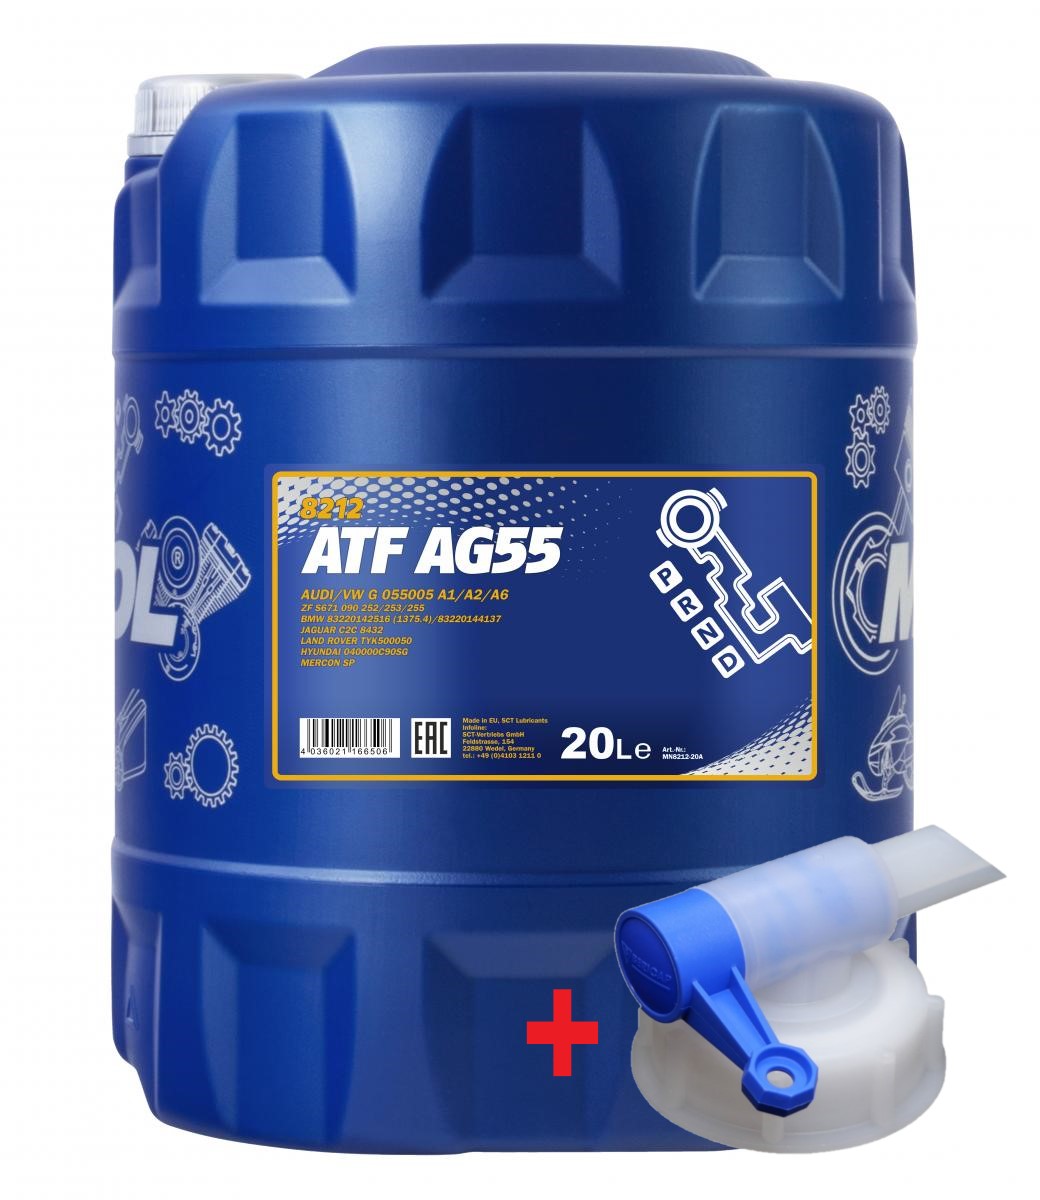 20 Liter MANNOL 8212 ATF AG55 Getriebeöl Automatikgetriebeöl 1x Ablasshahn